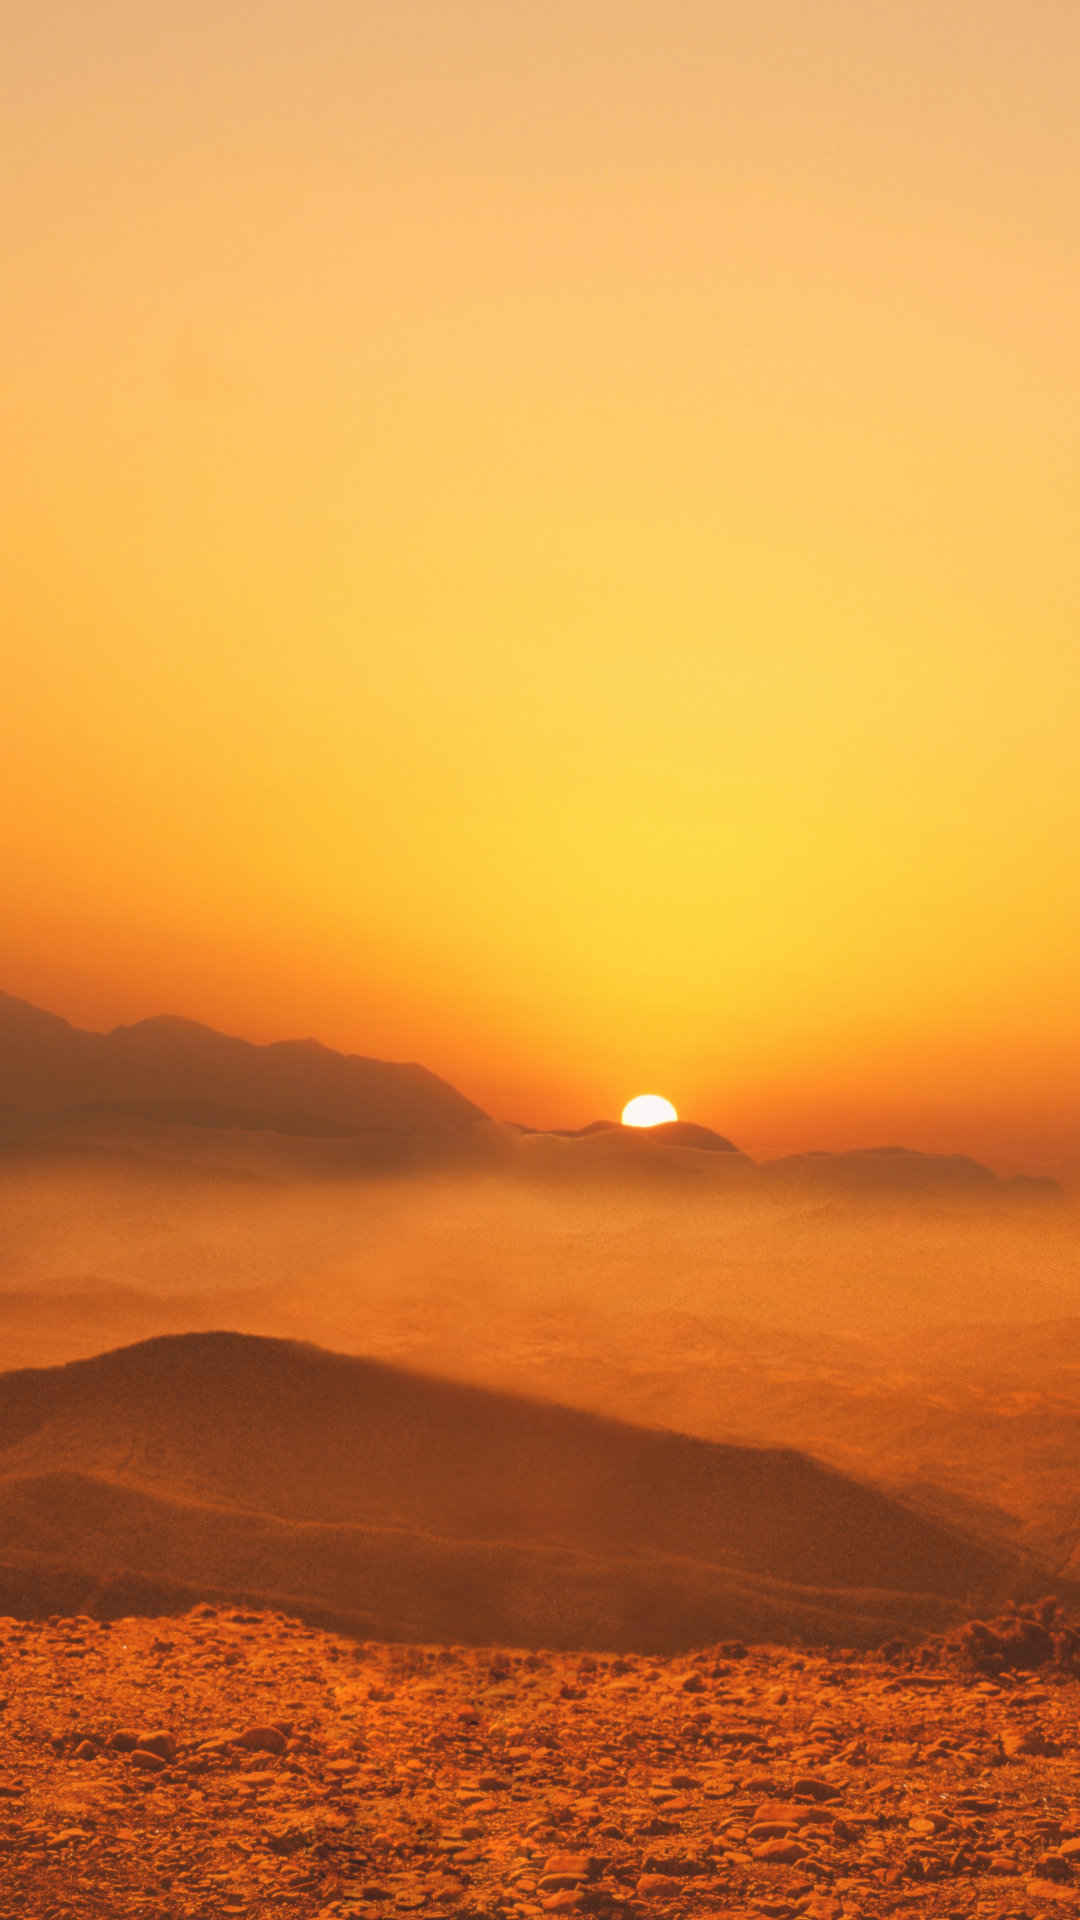 戈壁黄土坡上的日出风景-